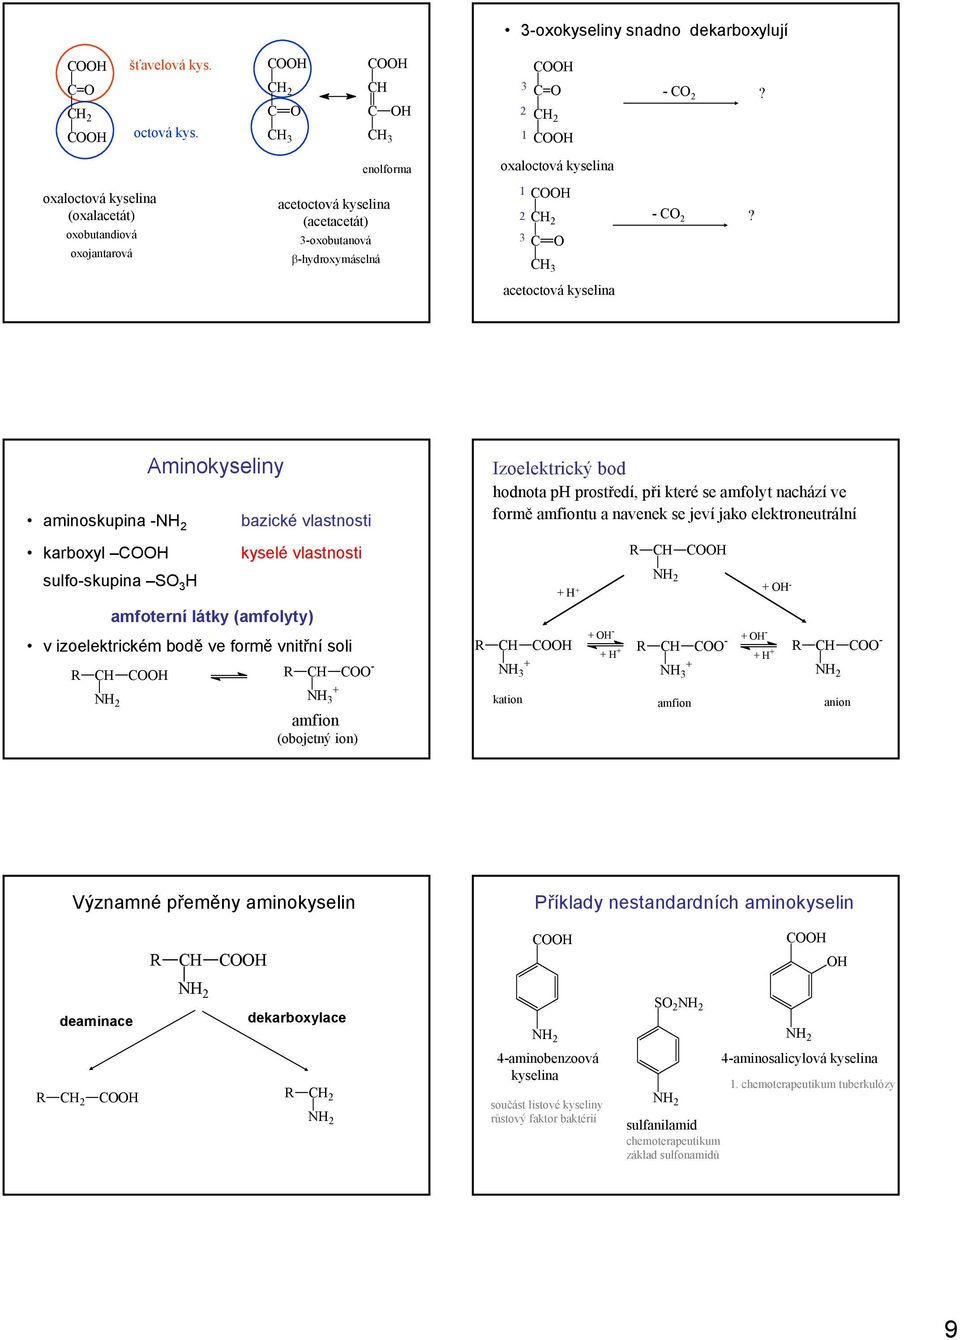 acetoctová kyselina aminoskupina 2 karboxyl sulfoskupina S 3 Aminokyseliny bazické vlastnosti kyselé vlastnosti amfoterní látky (amfolyty) v izoelektrickém bodě ve formě vnitřní soli 2 3 amfion